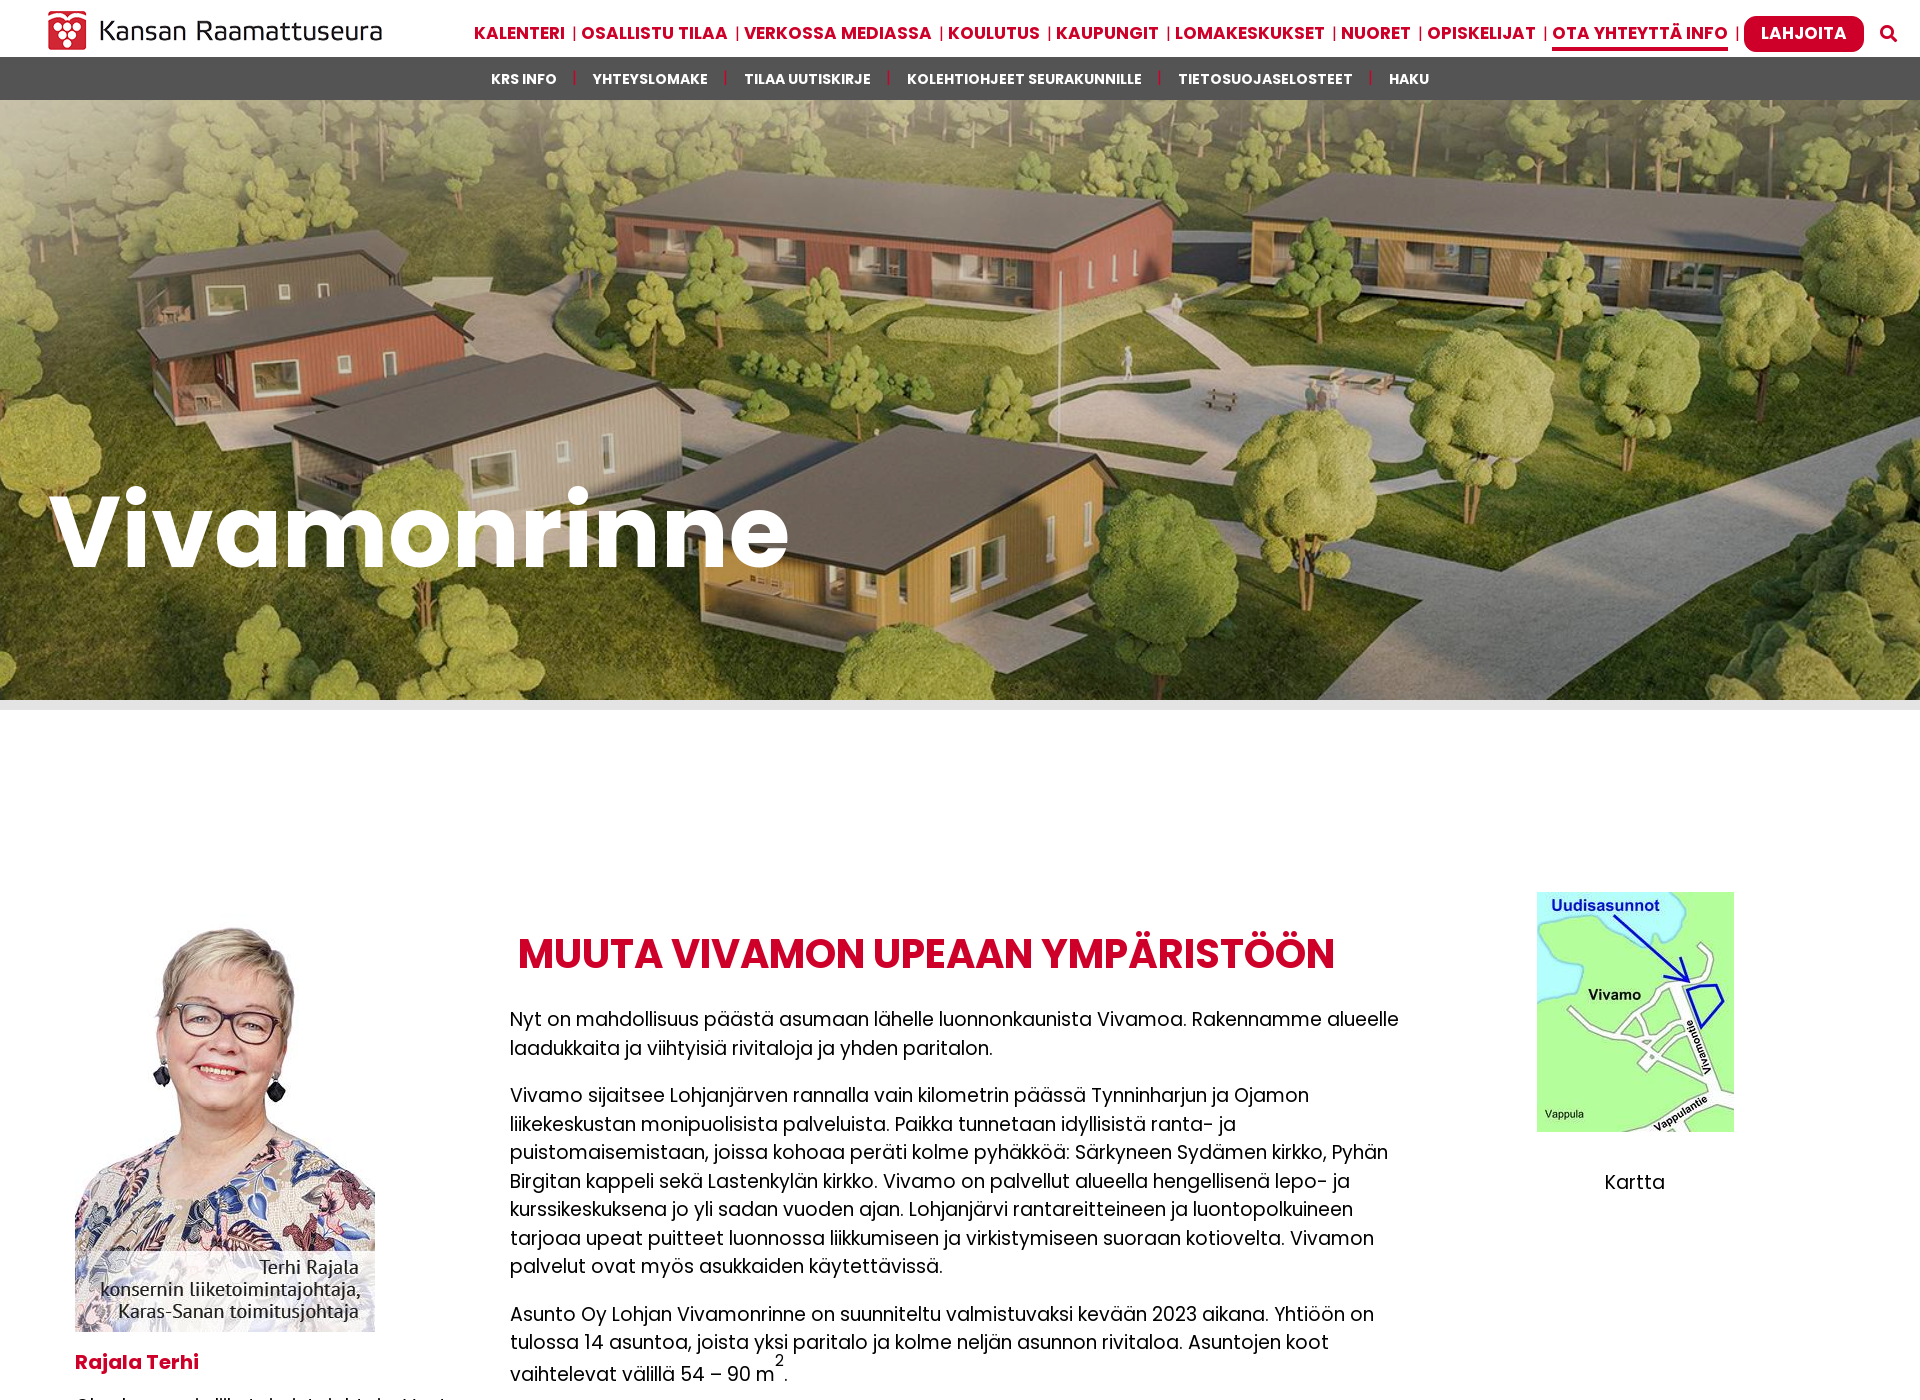 Näyttökuva vivamonrinne.fi